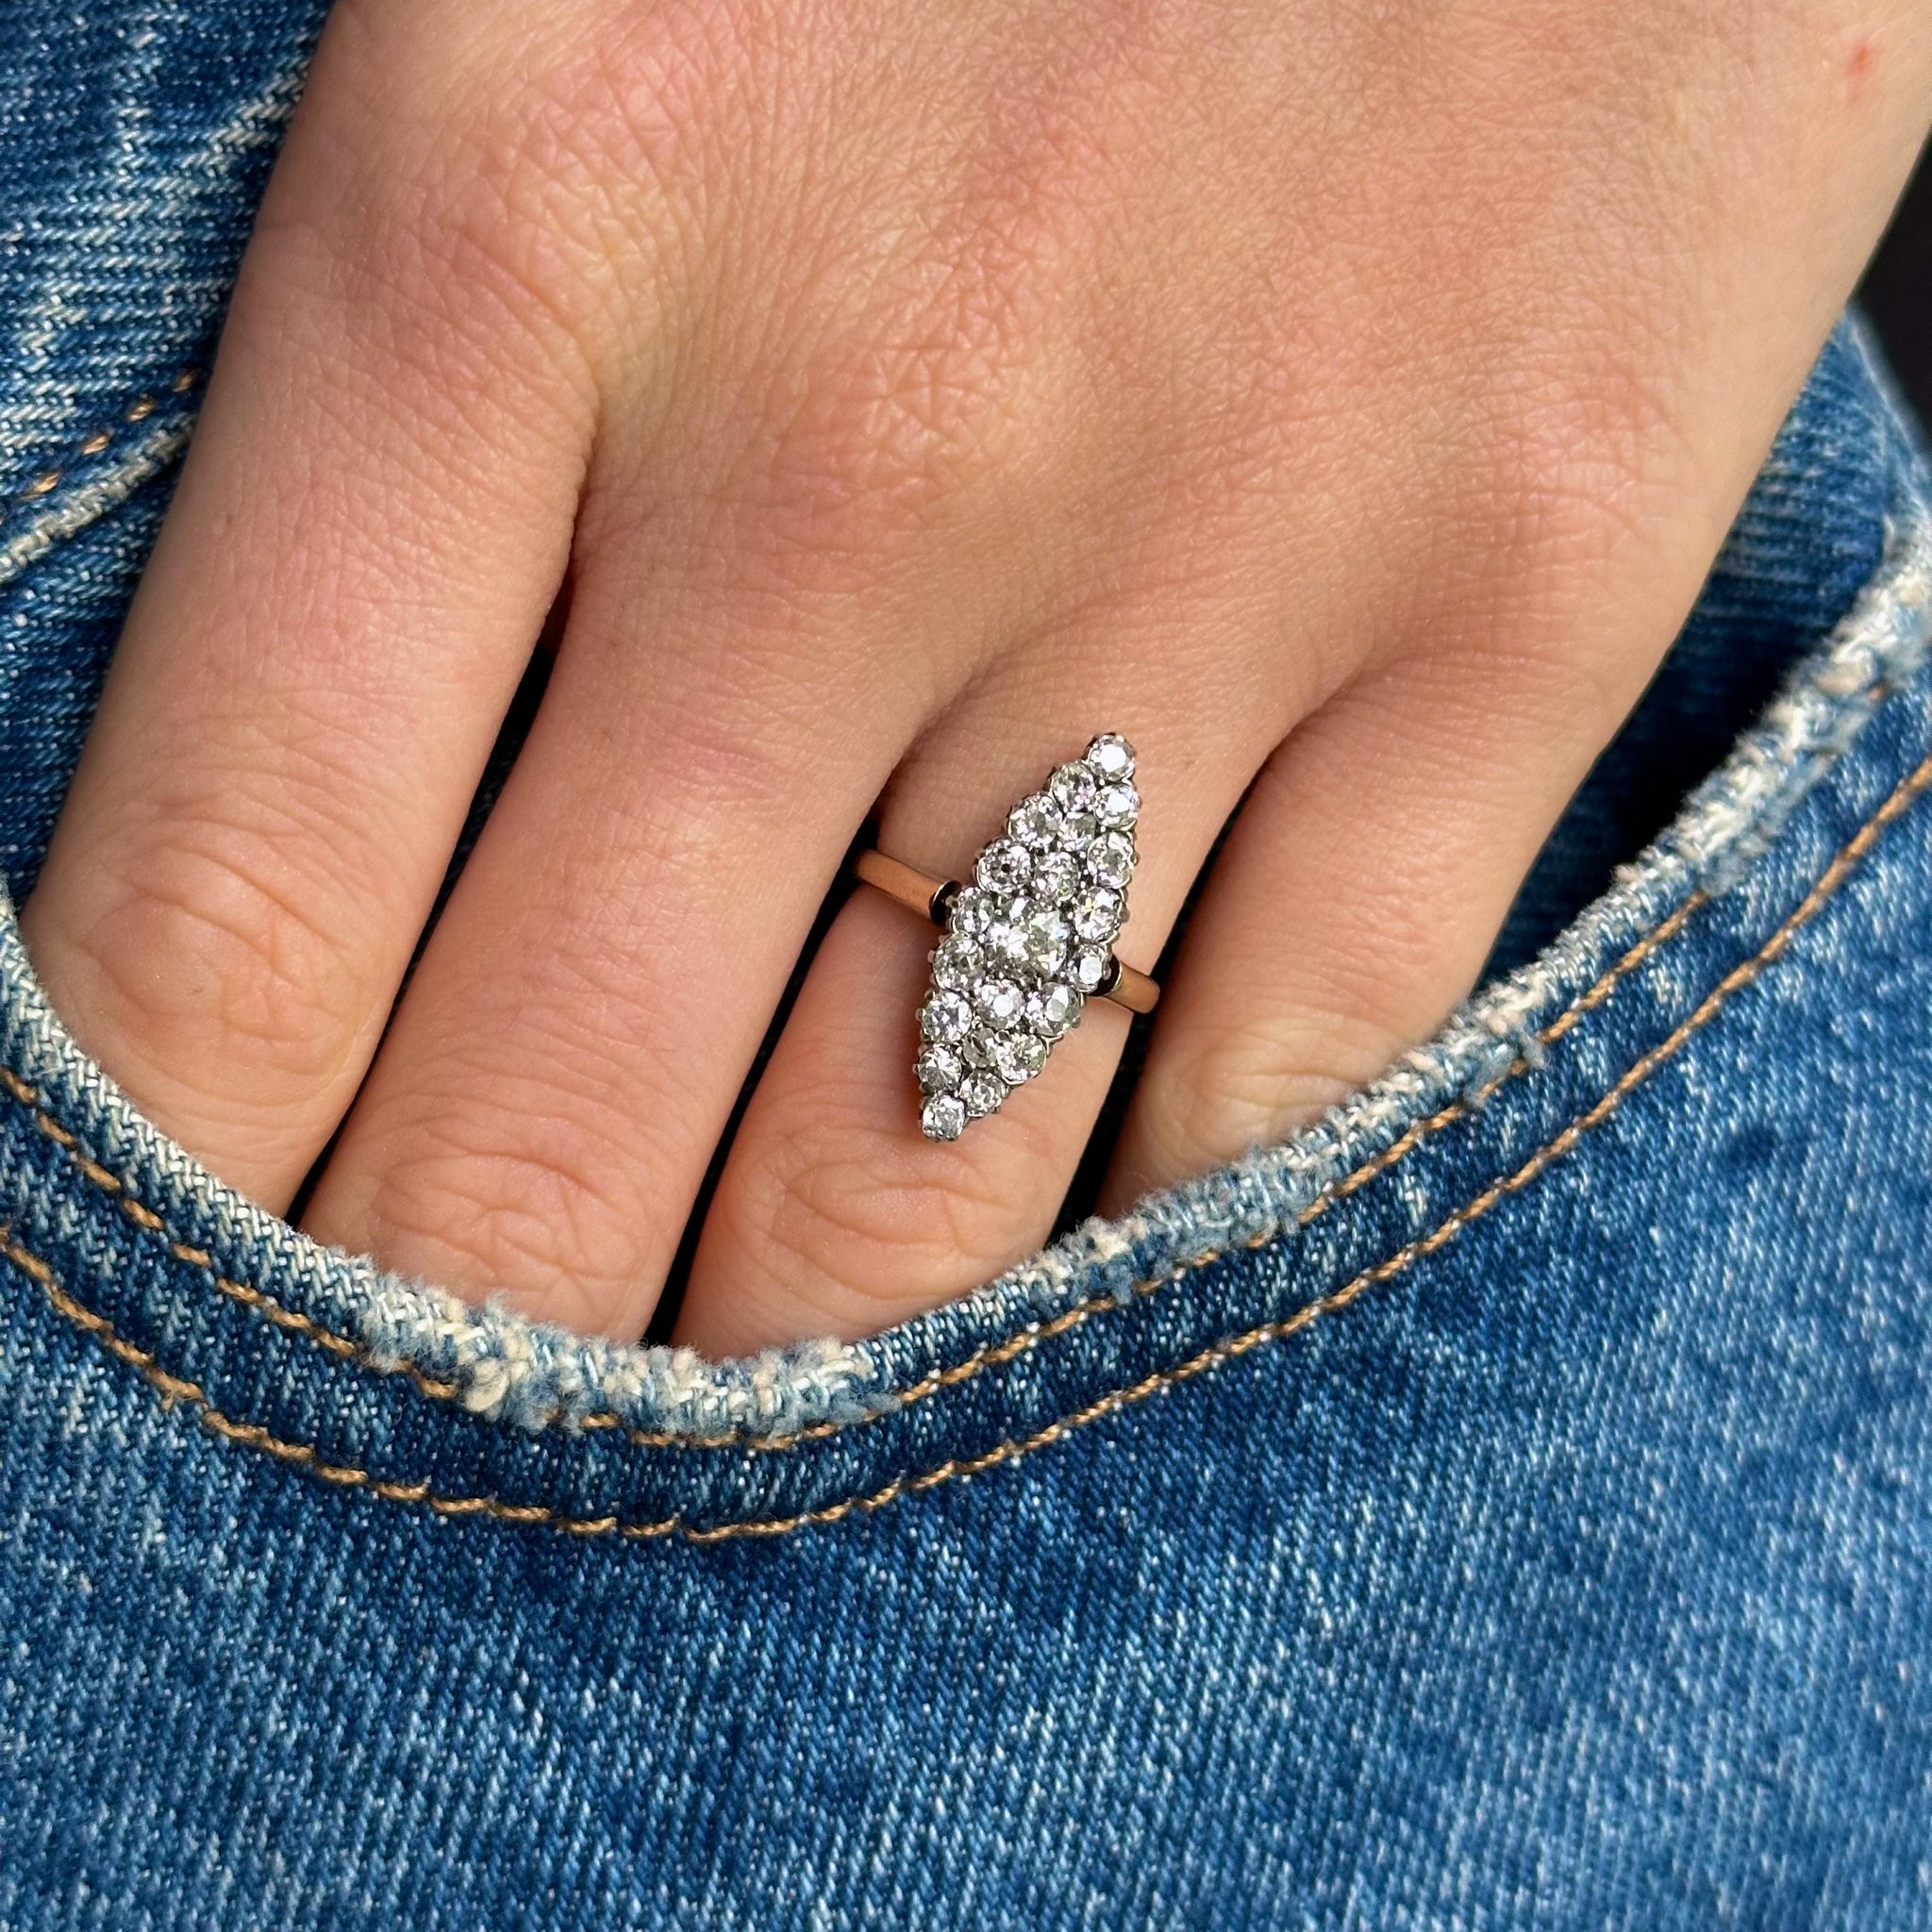 Diamond navette ring worn on hand in pocket of denim jeans